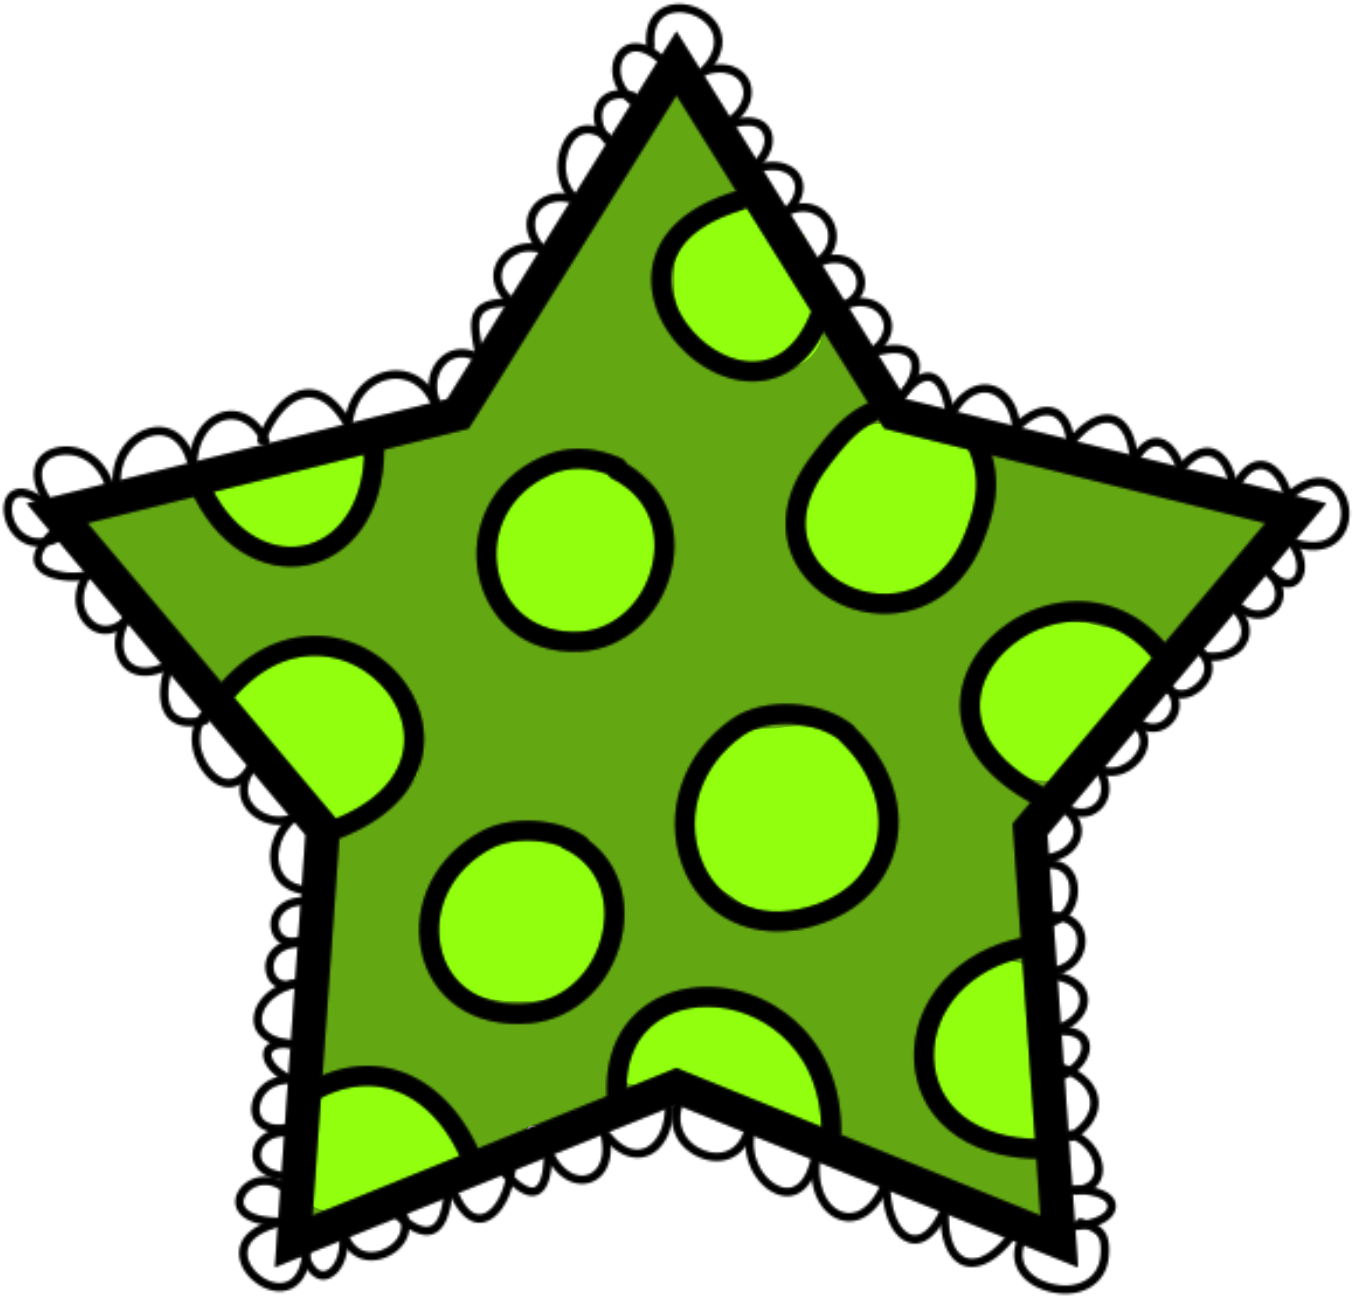 Green Polka Dot Star (1459x1457)